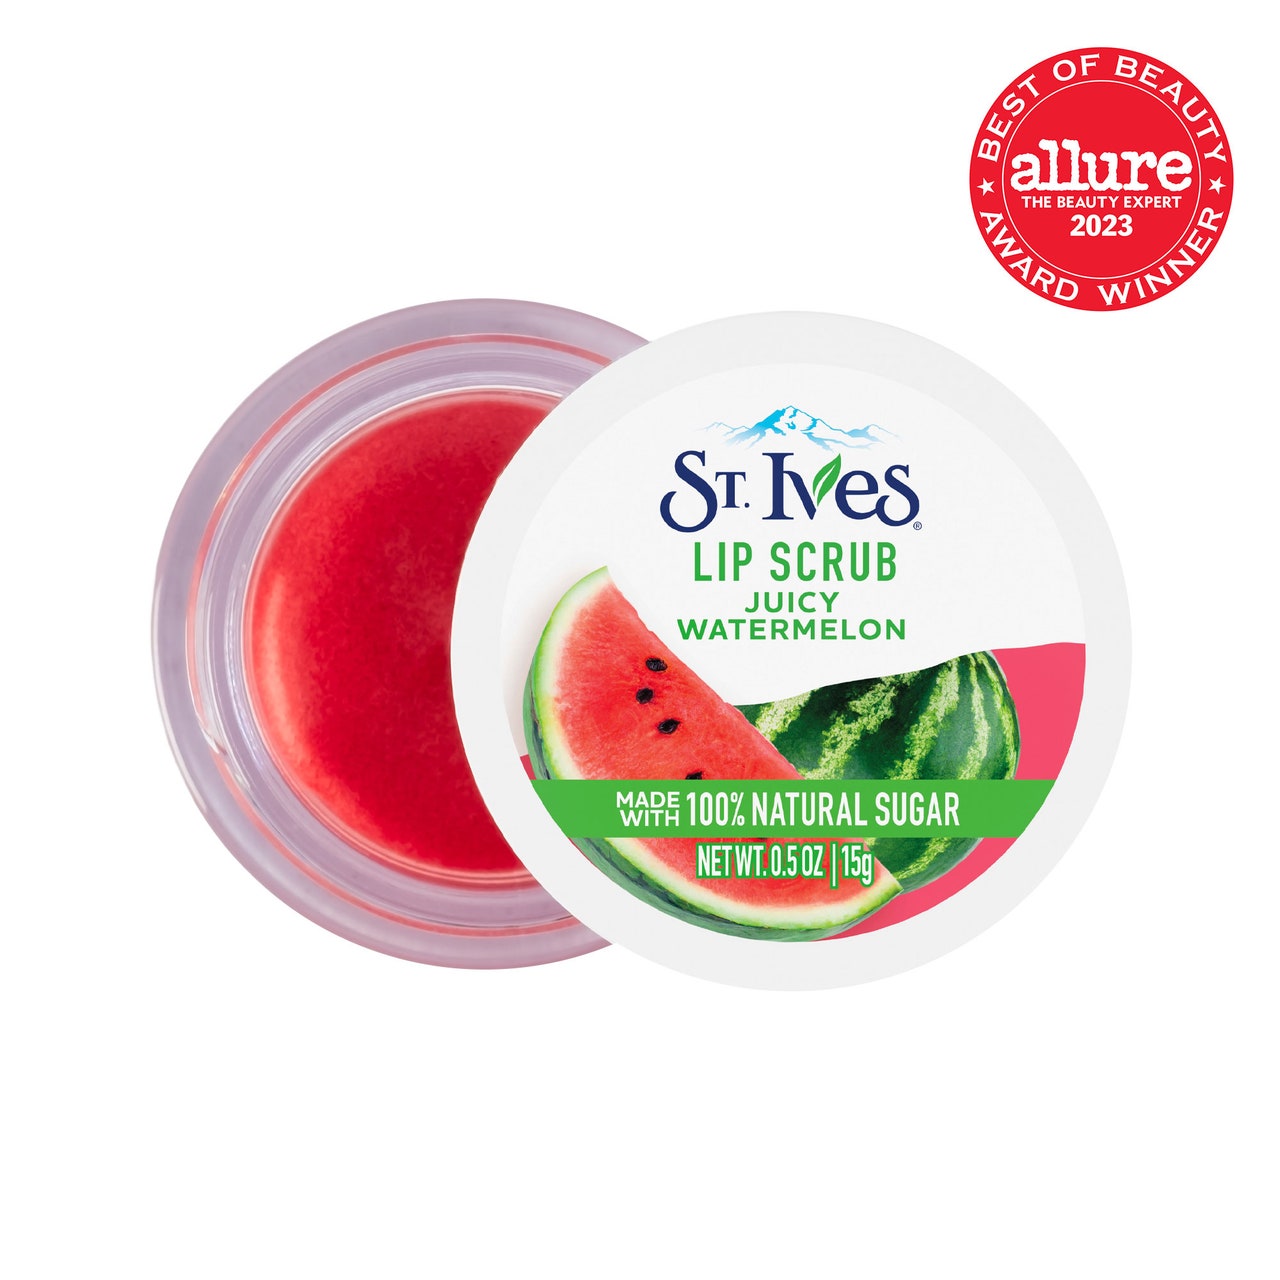 St. Ives Juicy Watermelon Lip Scrub Draufsicht auf ein Glas rosa Lippenpeeling mit weißem Deckel und angelehnter Wassermelonengrafik auf weißem Hintergrund mit rotem Allure BoB-Siegel in der oberen rechten Ecke